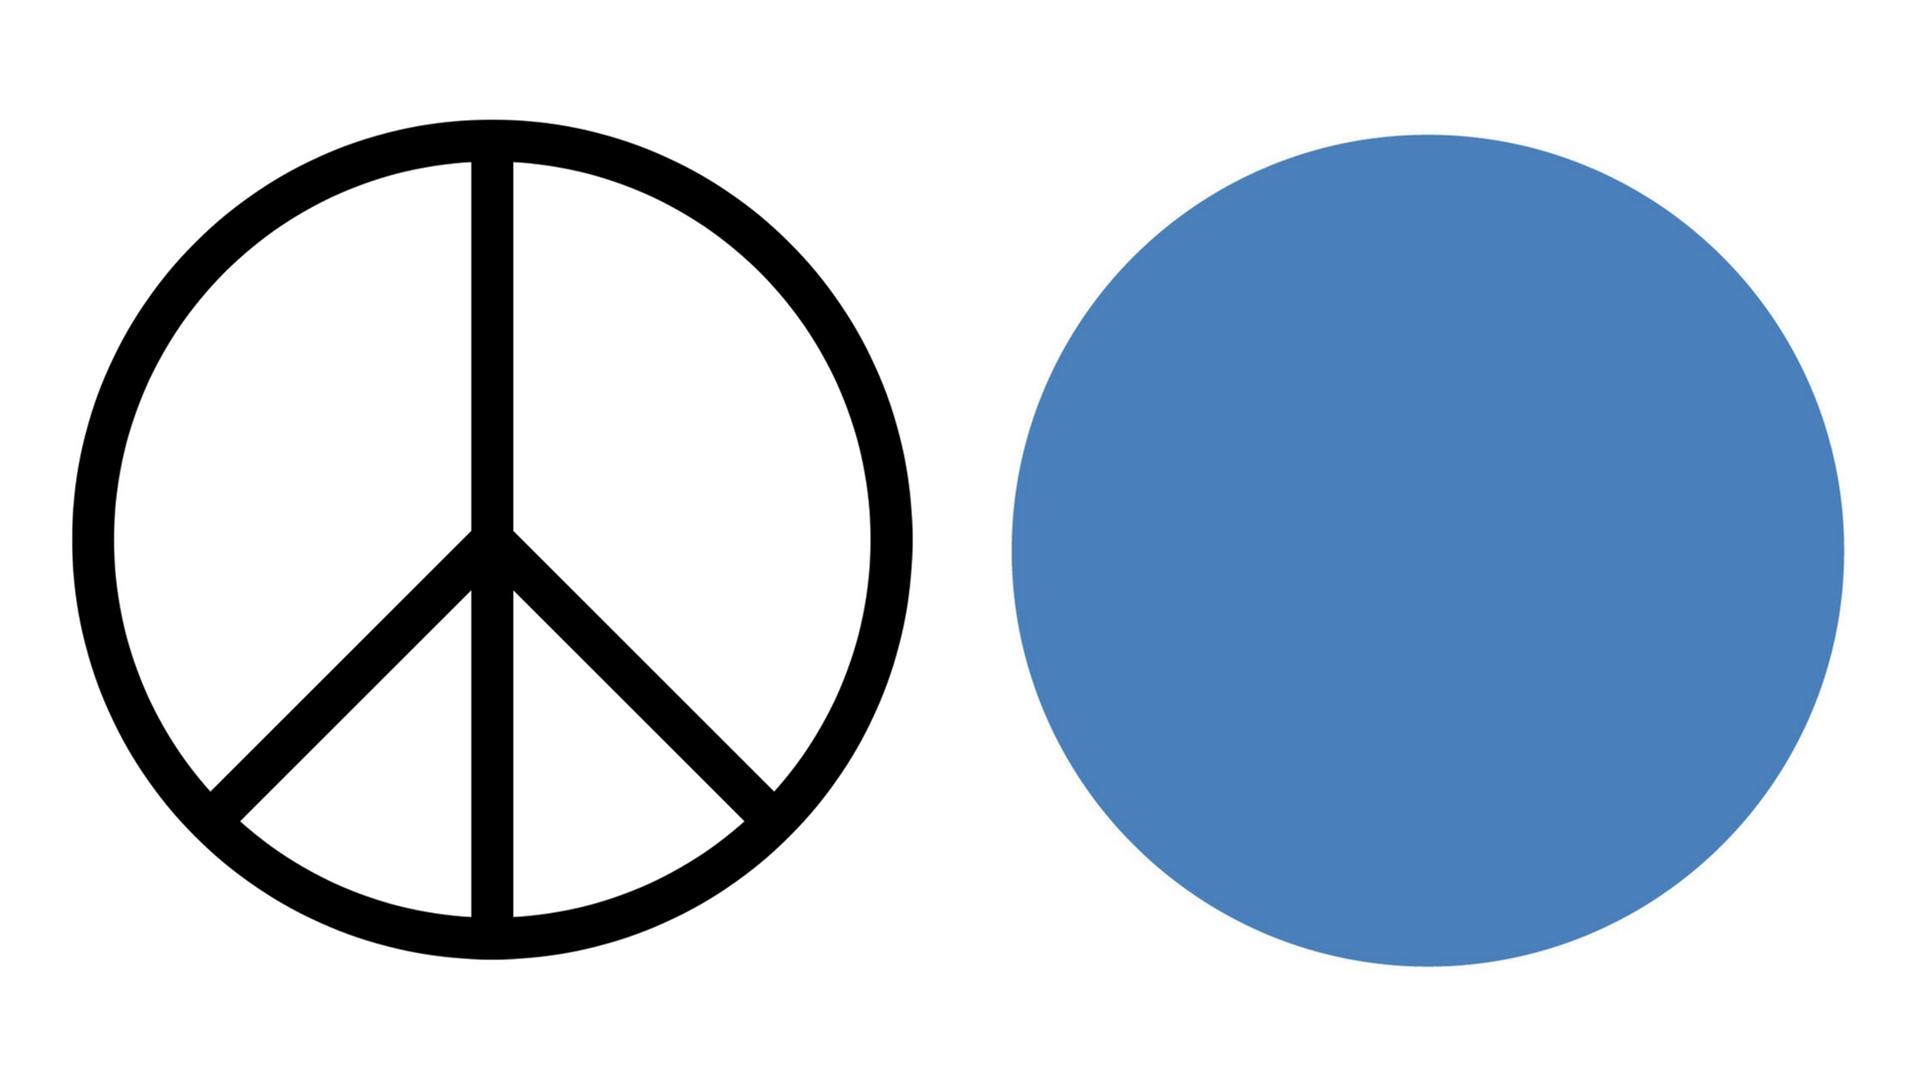 Friedenssymbolik - Auf der Suche nach einem neuen Peace-Zeichen